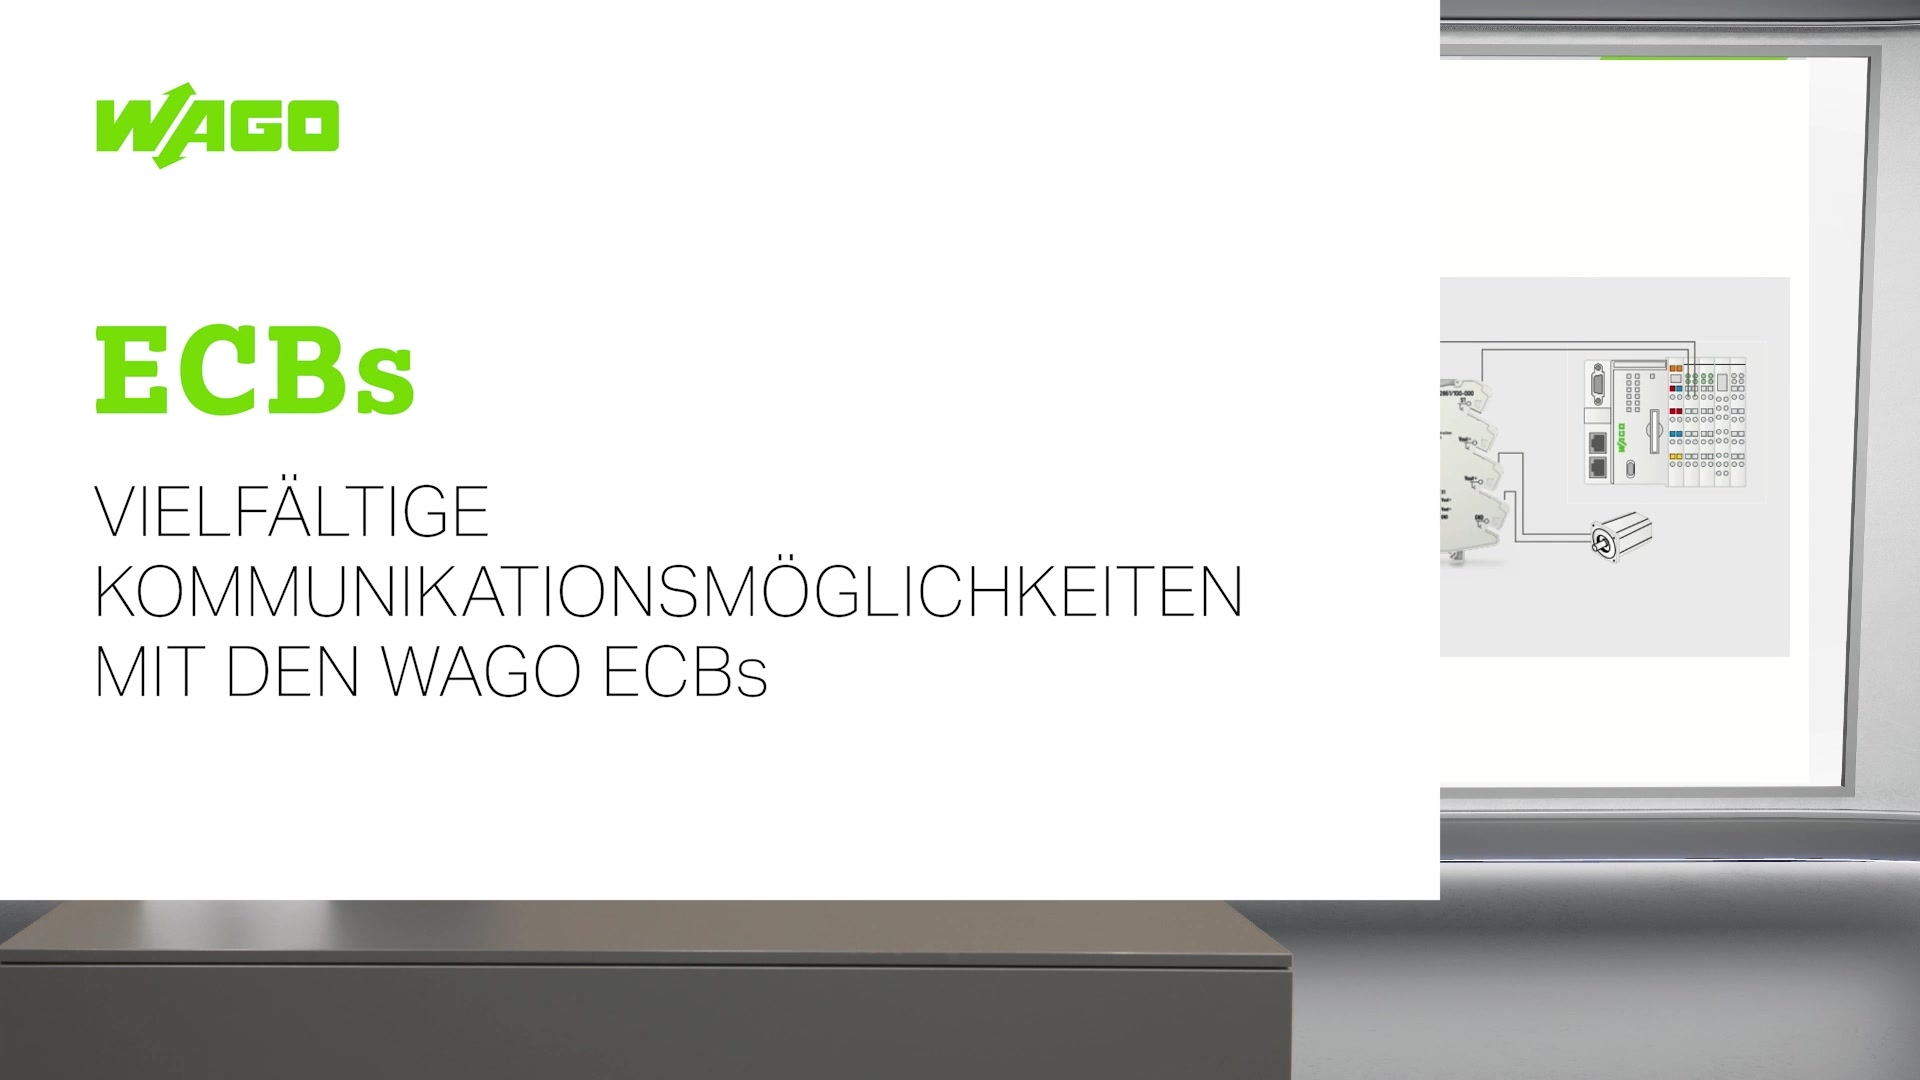 Vielfältige Kommunikationsmöglichkeiten mit den WAGO ECBs